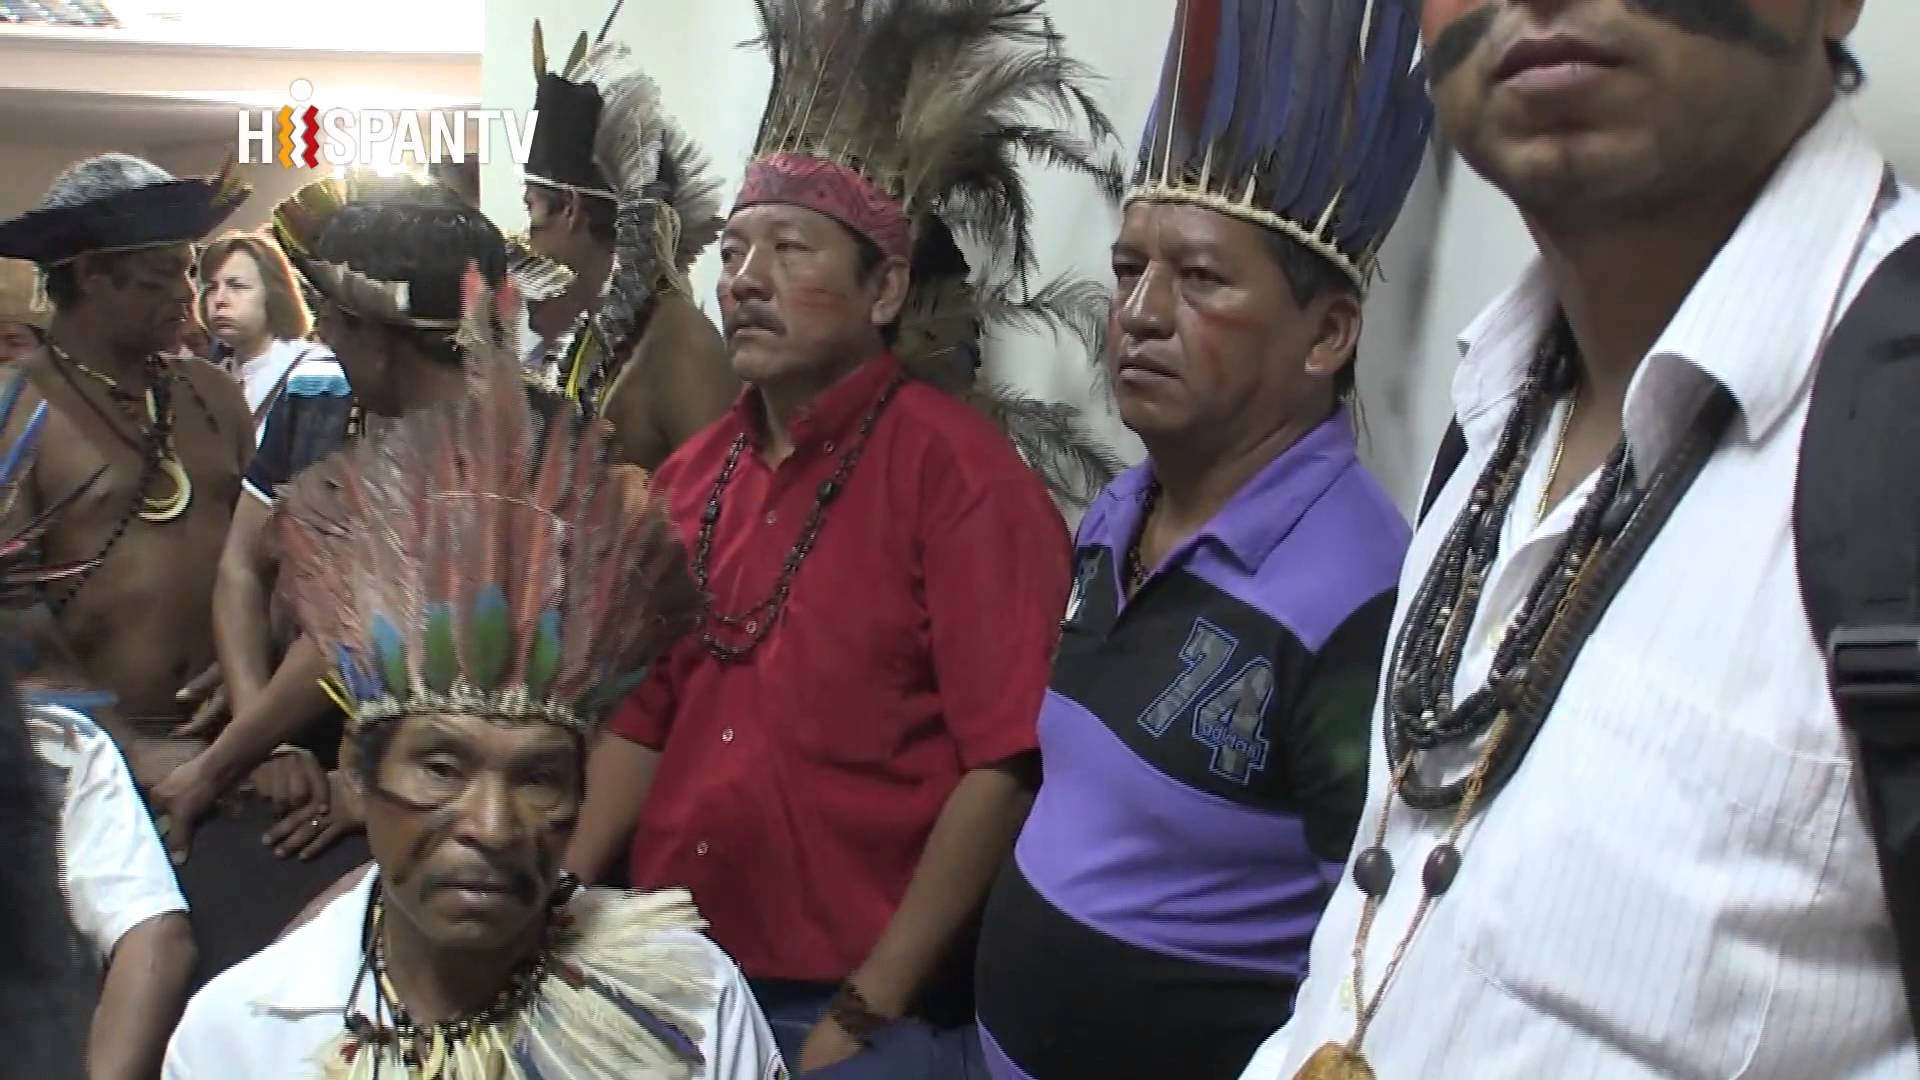 Panorama - Indígenas en Brasil luchan por sus tierras